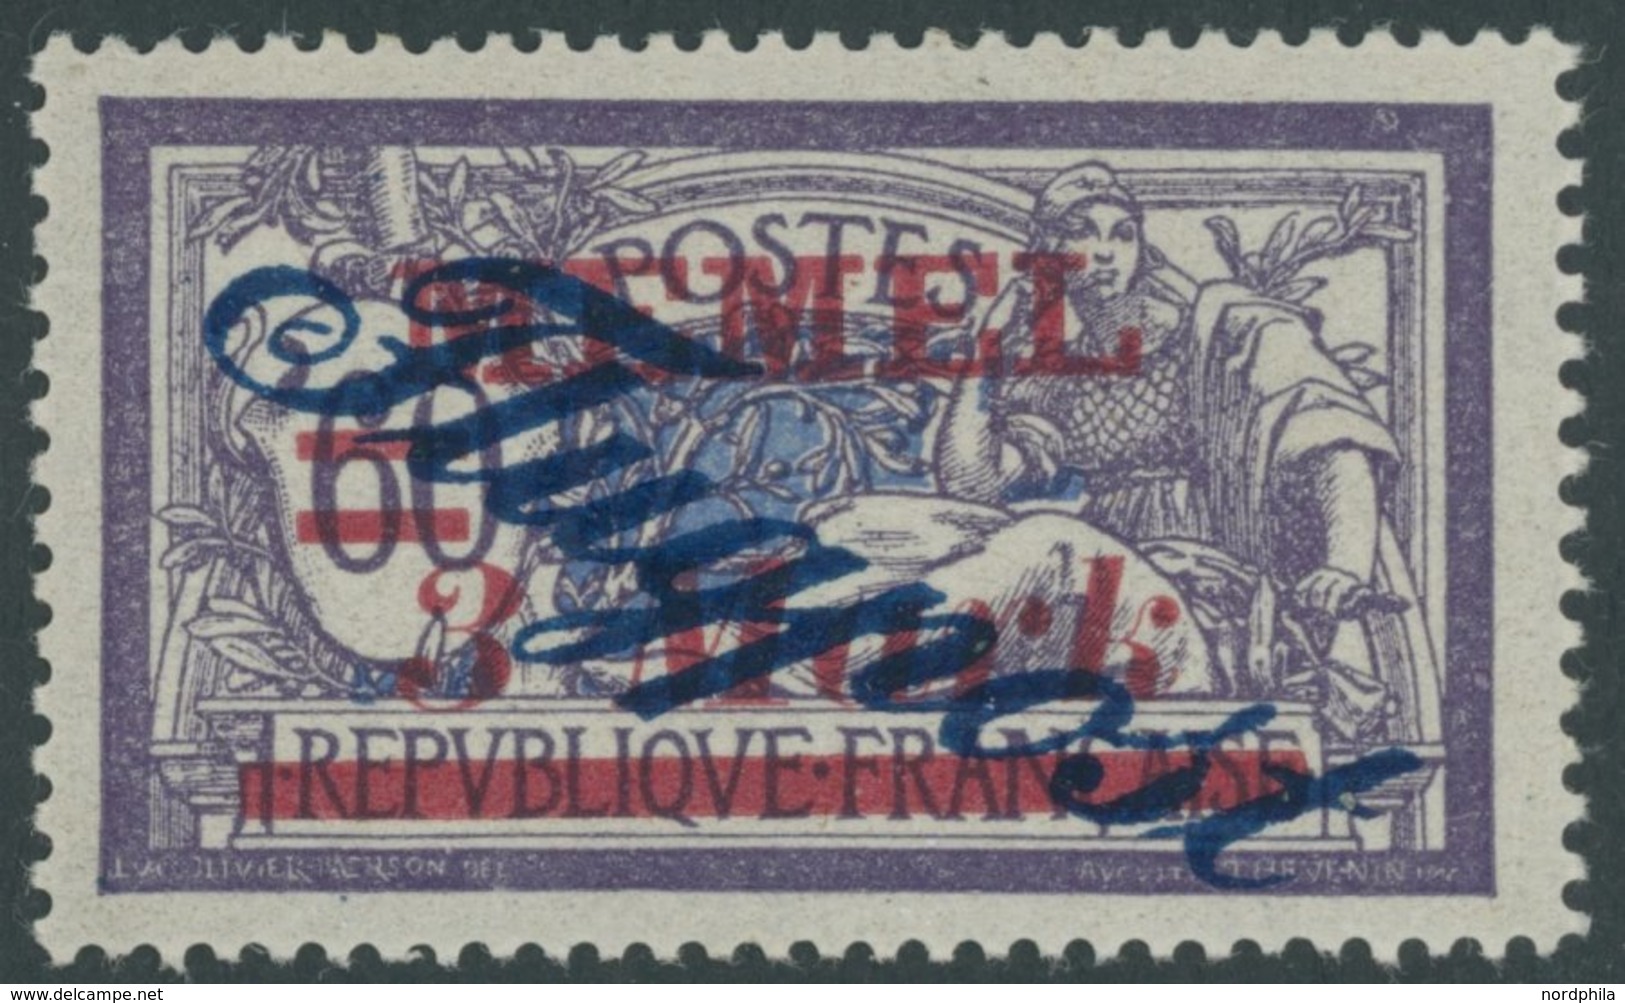 MEMELGEBIET 79 *, 1922, 3 M. Auf 60 C. Dunkelgrauviolett/kobalt, Falzrest, Pracht, Mi. 160.- - Klaipeda 1923